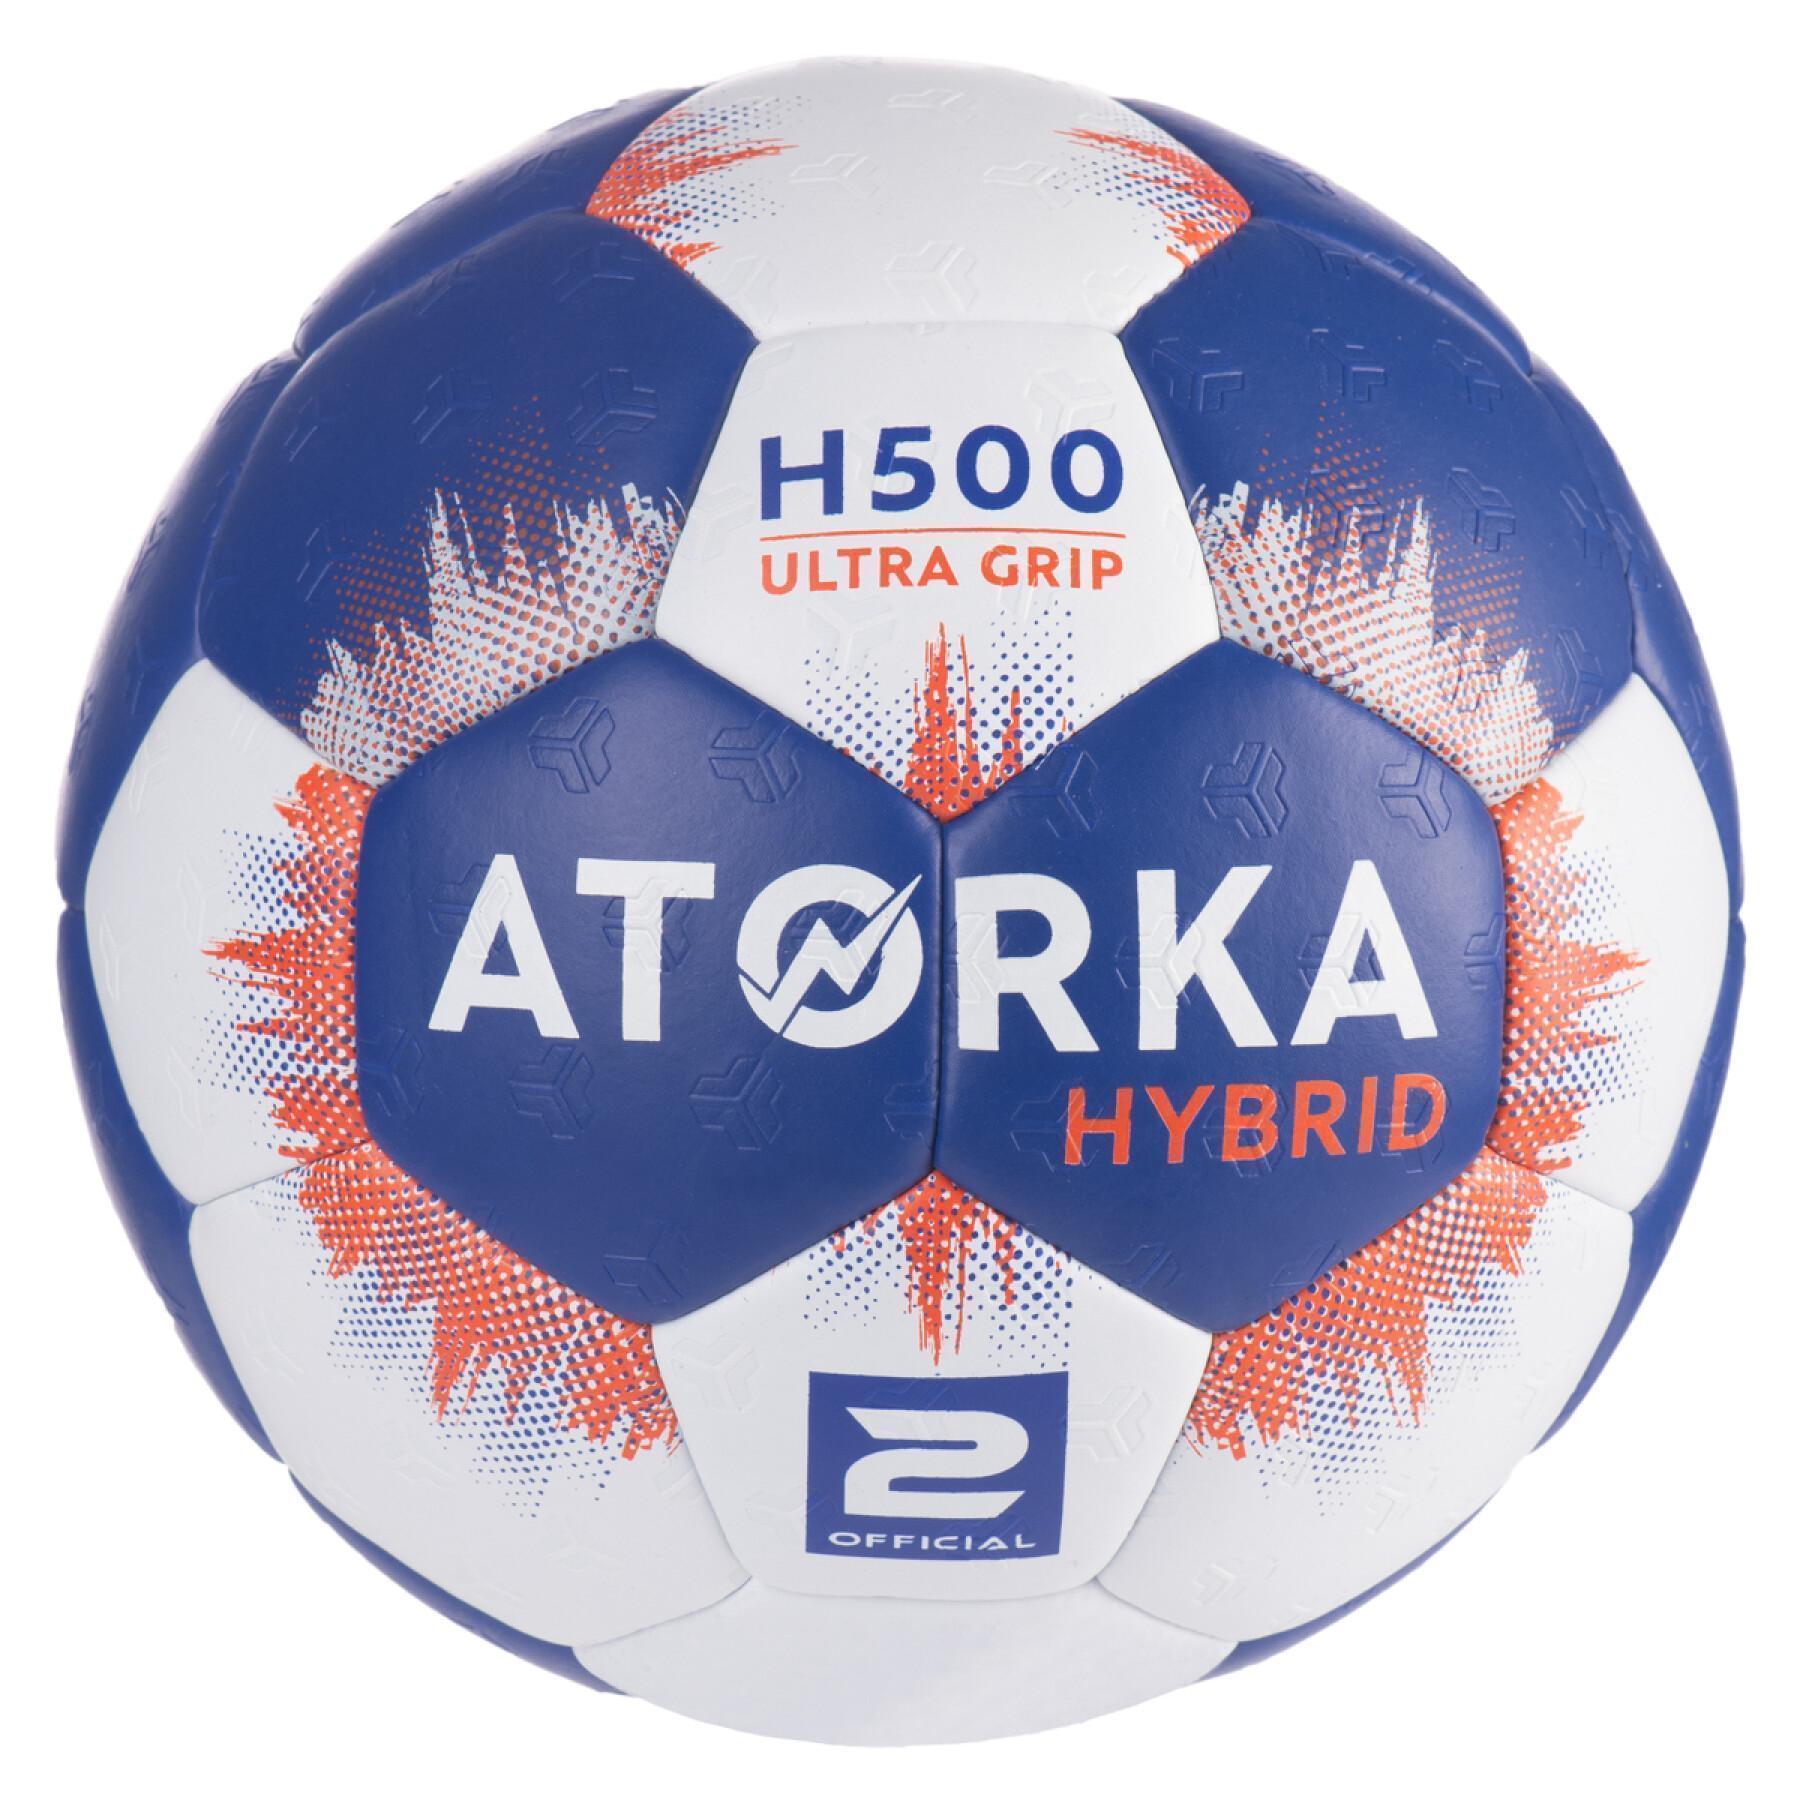 Bola Atorka H500 tamanho 2